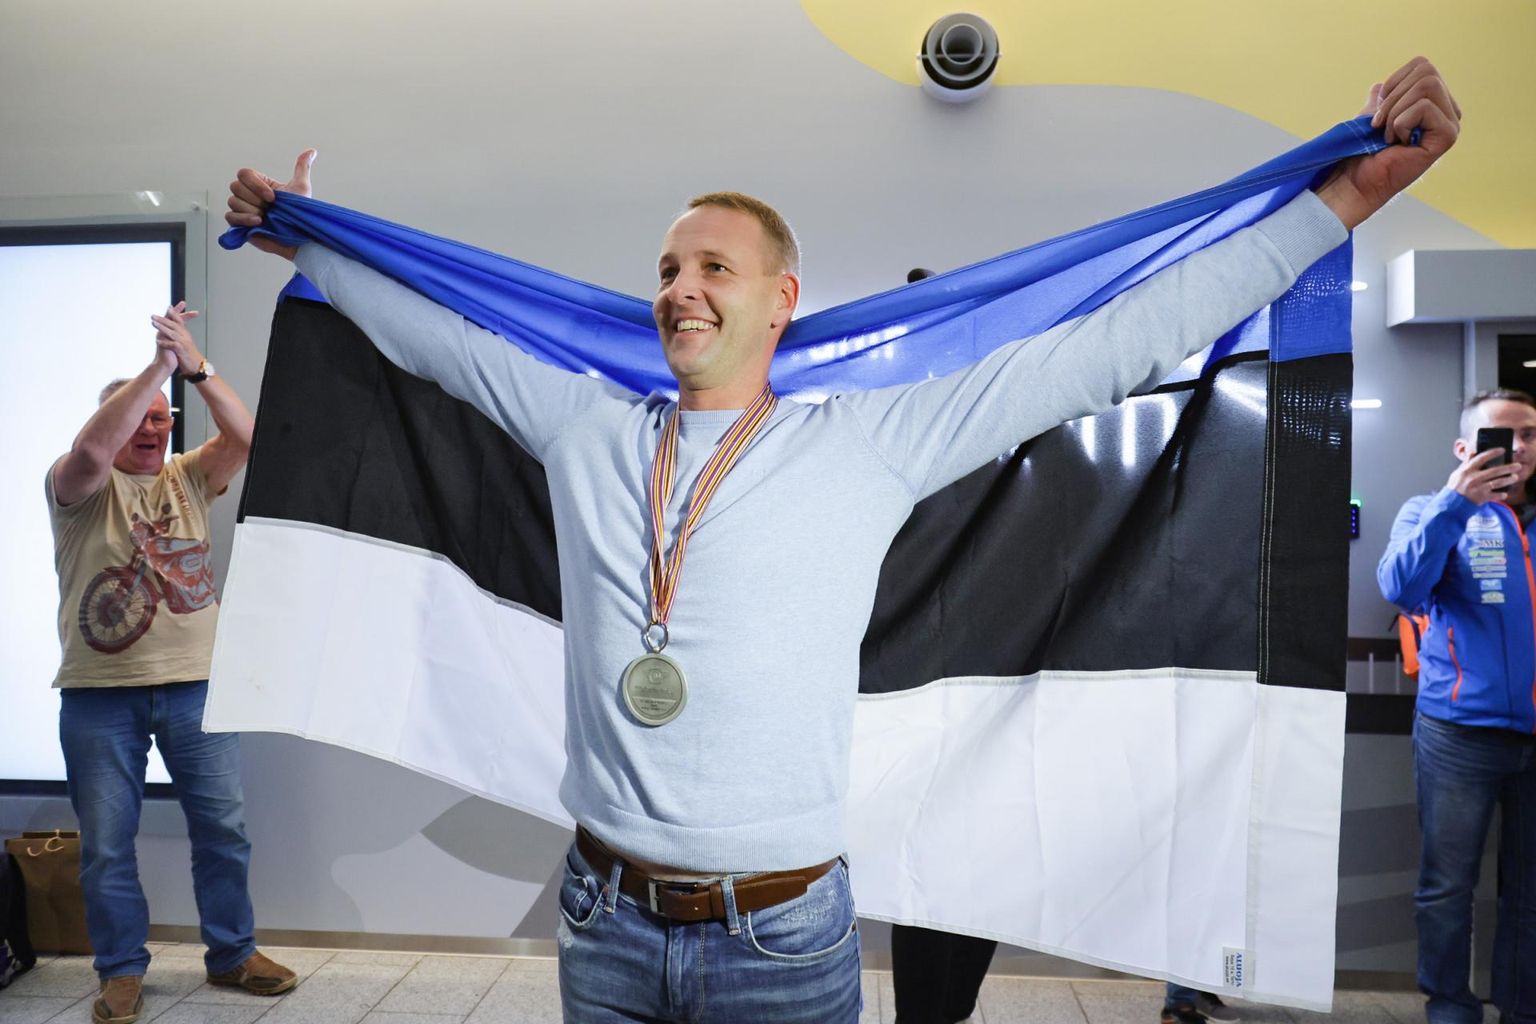 Viljandimaa spordiliit valis parimaks meessportlaseks motokrossisõitja Kert Variku, kes tõi koos Lari Kunnasega külgkorviga mootorrataste krossi maailmameistrivõistlustelt hõbemedali ja on ühtlasi kümnekordne Eesti meister.